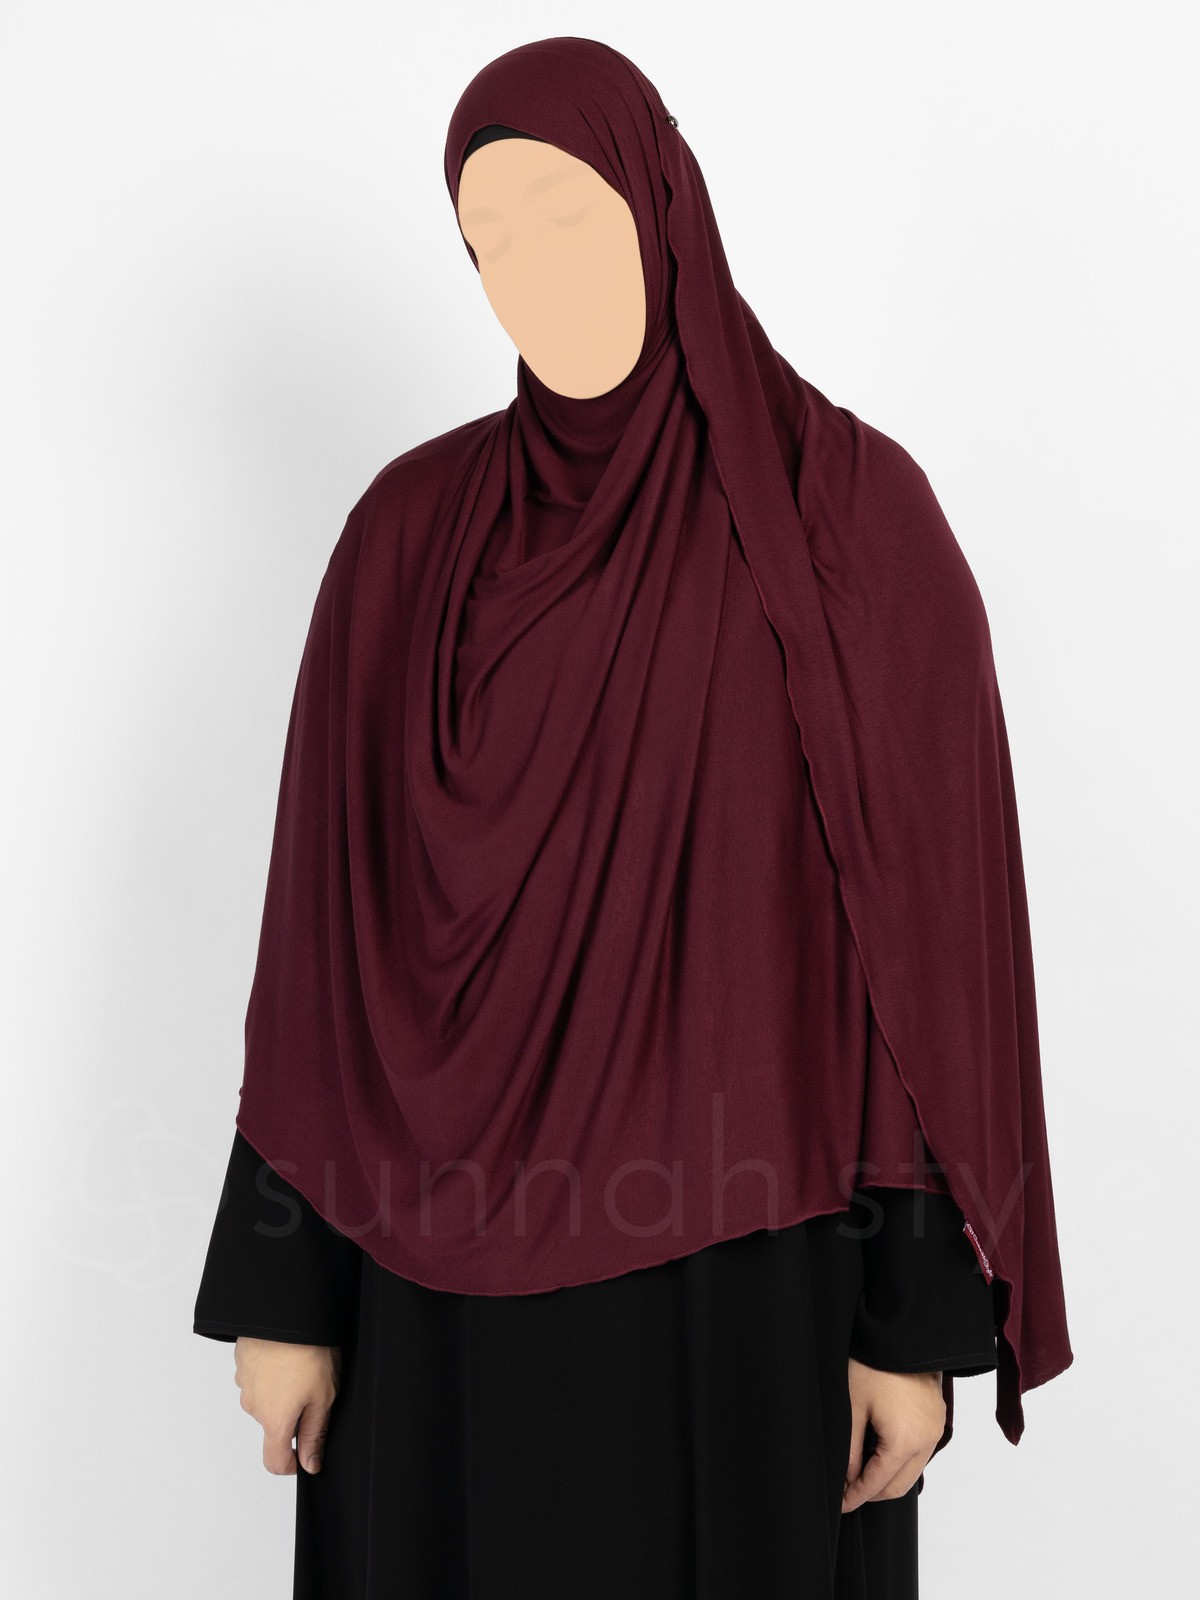 Sunnah Style - Urban Shayla (Soft Jersey) - XL (Plum)